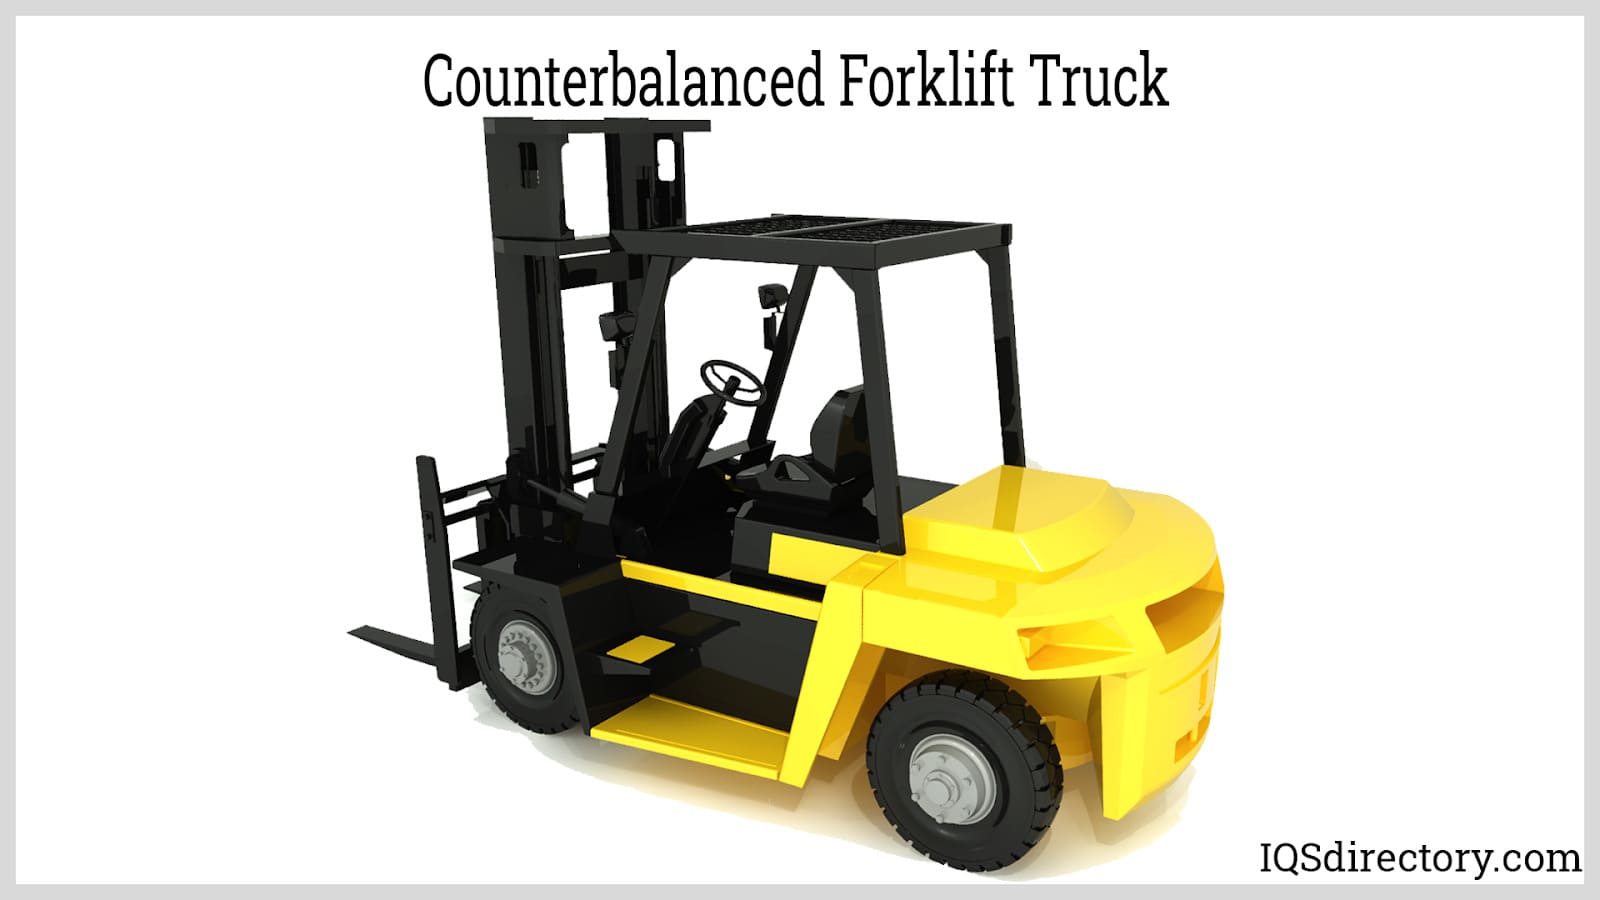 Forklift Dealer Athens, Ga